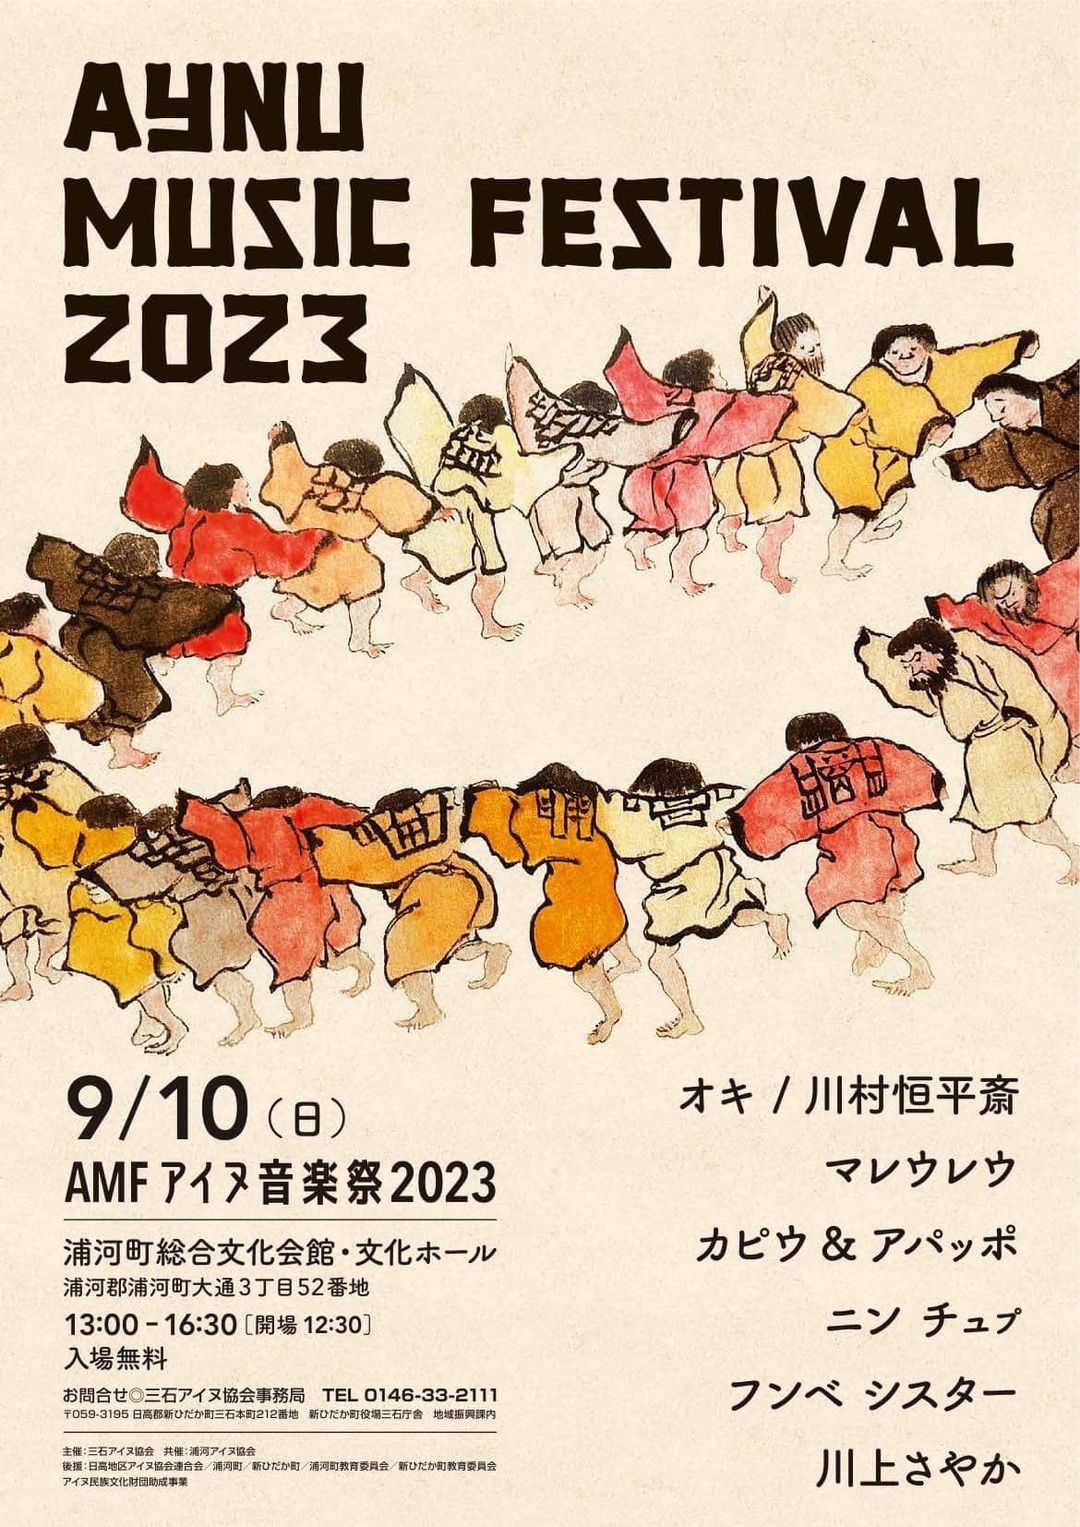 アイヌミュージックフェスティバル2023